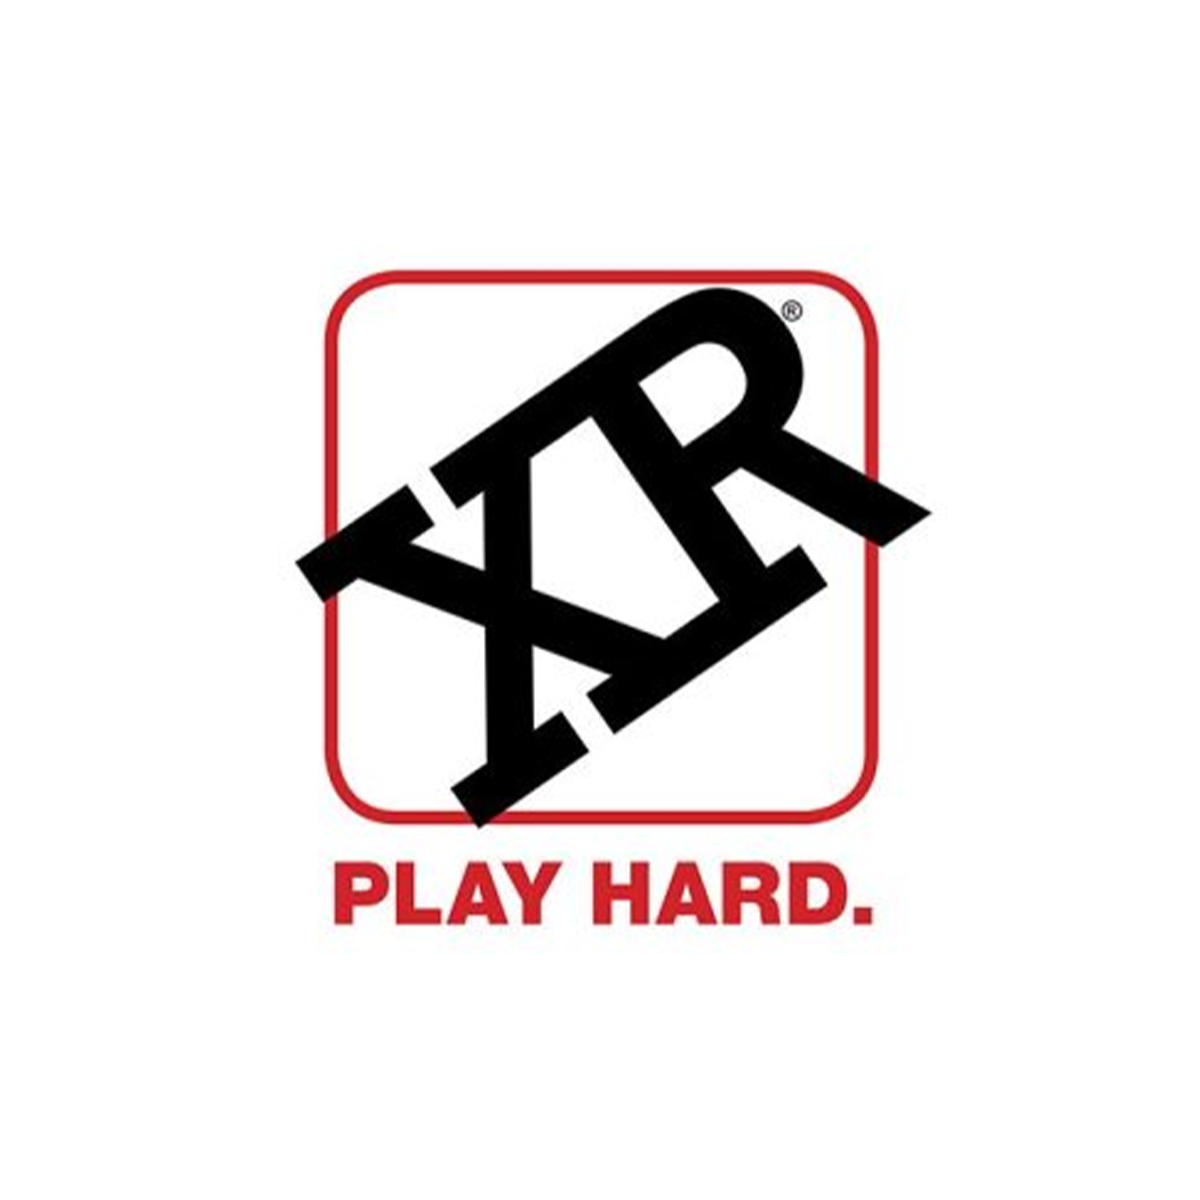 xr brand logo